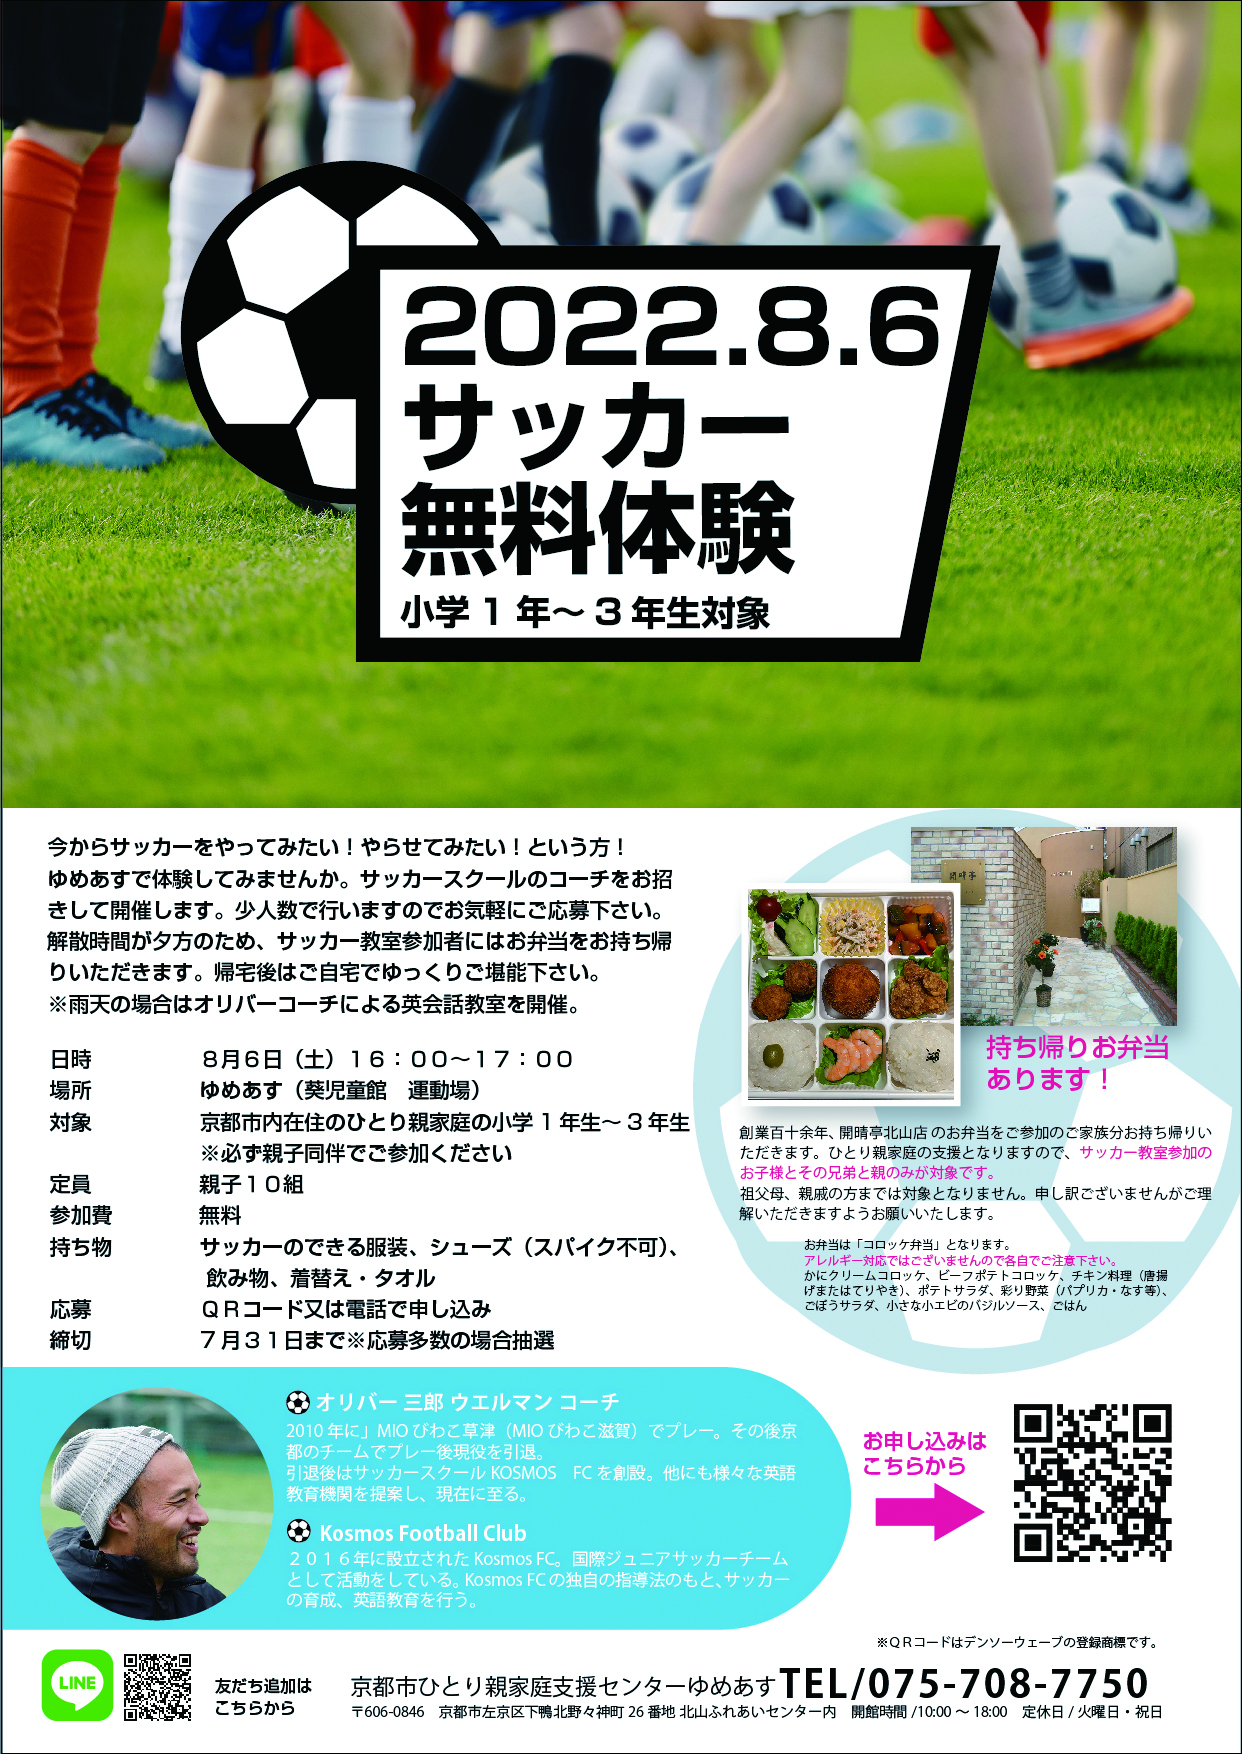 サッカー無料体験 持ち帰りお弁当付き 京都市ひとり親家庭支援センター ゆめあす